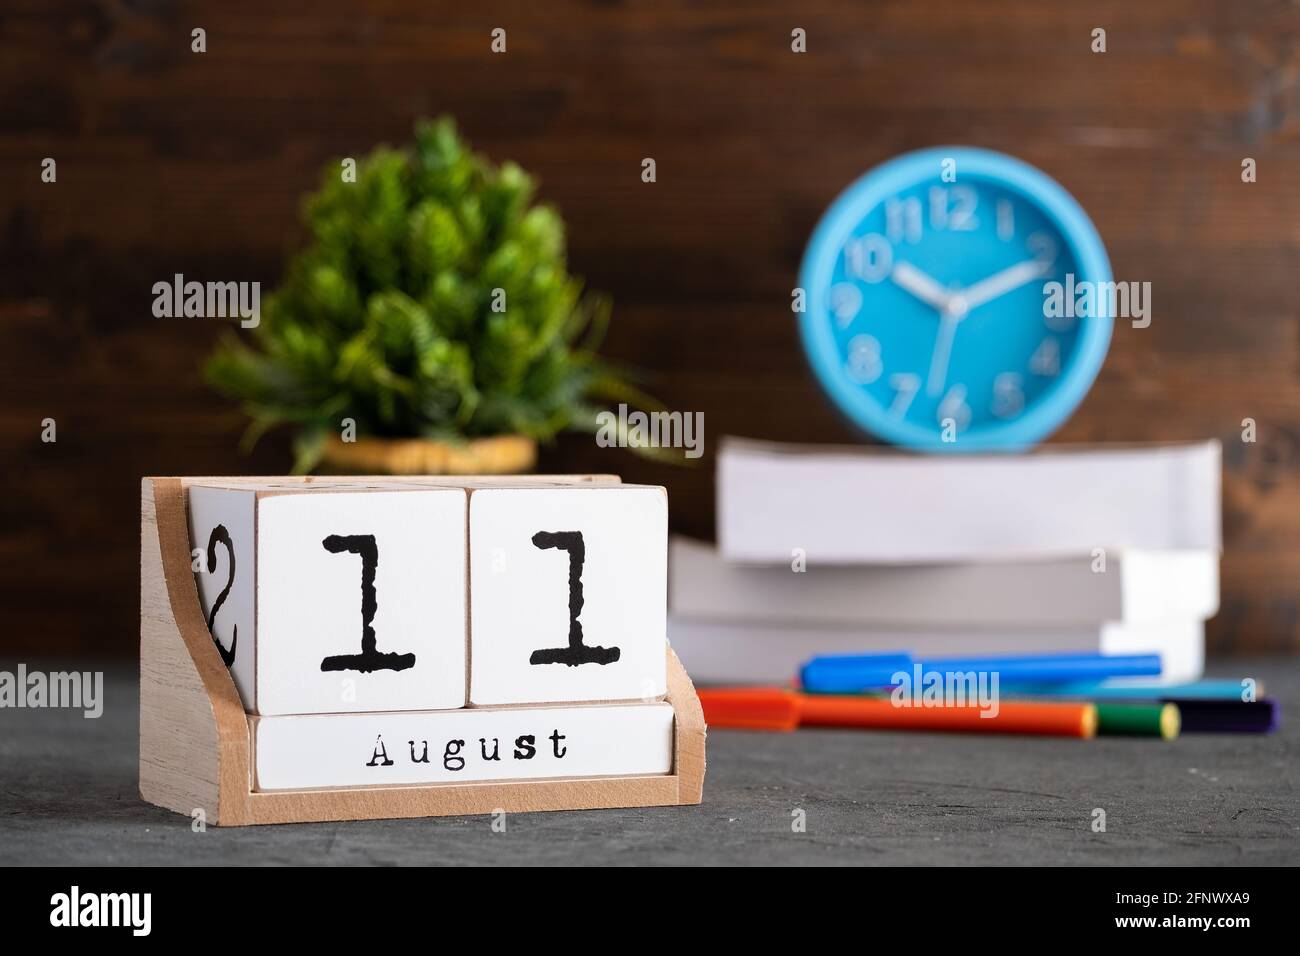 23 août. Août 23 calendrier cube en bois avec des objets flous sur fond. Banque D'Images